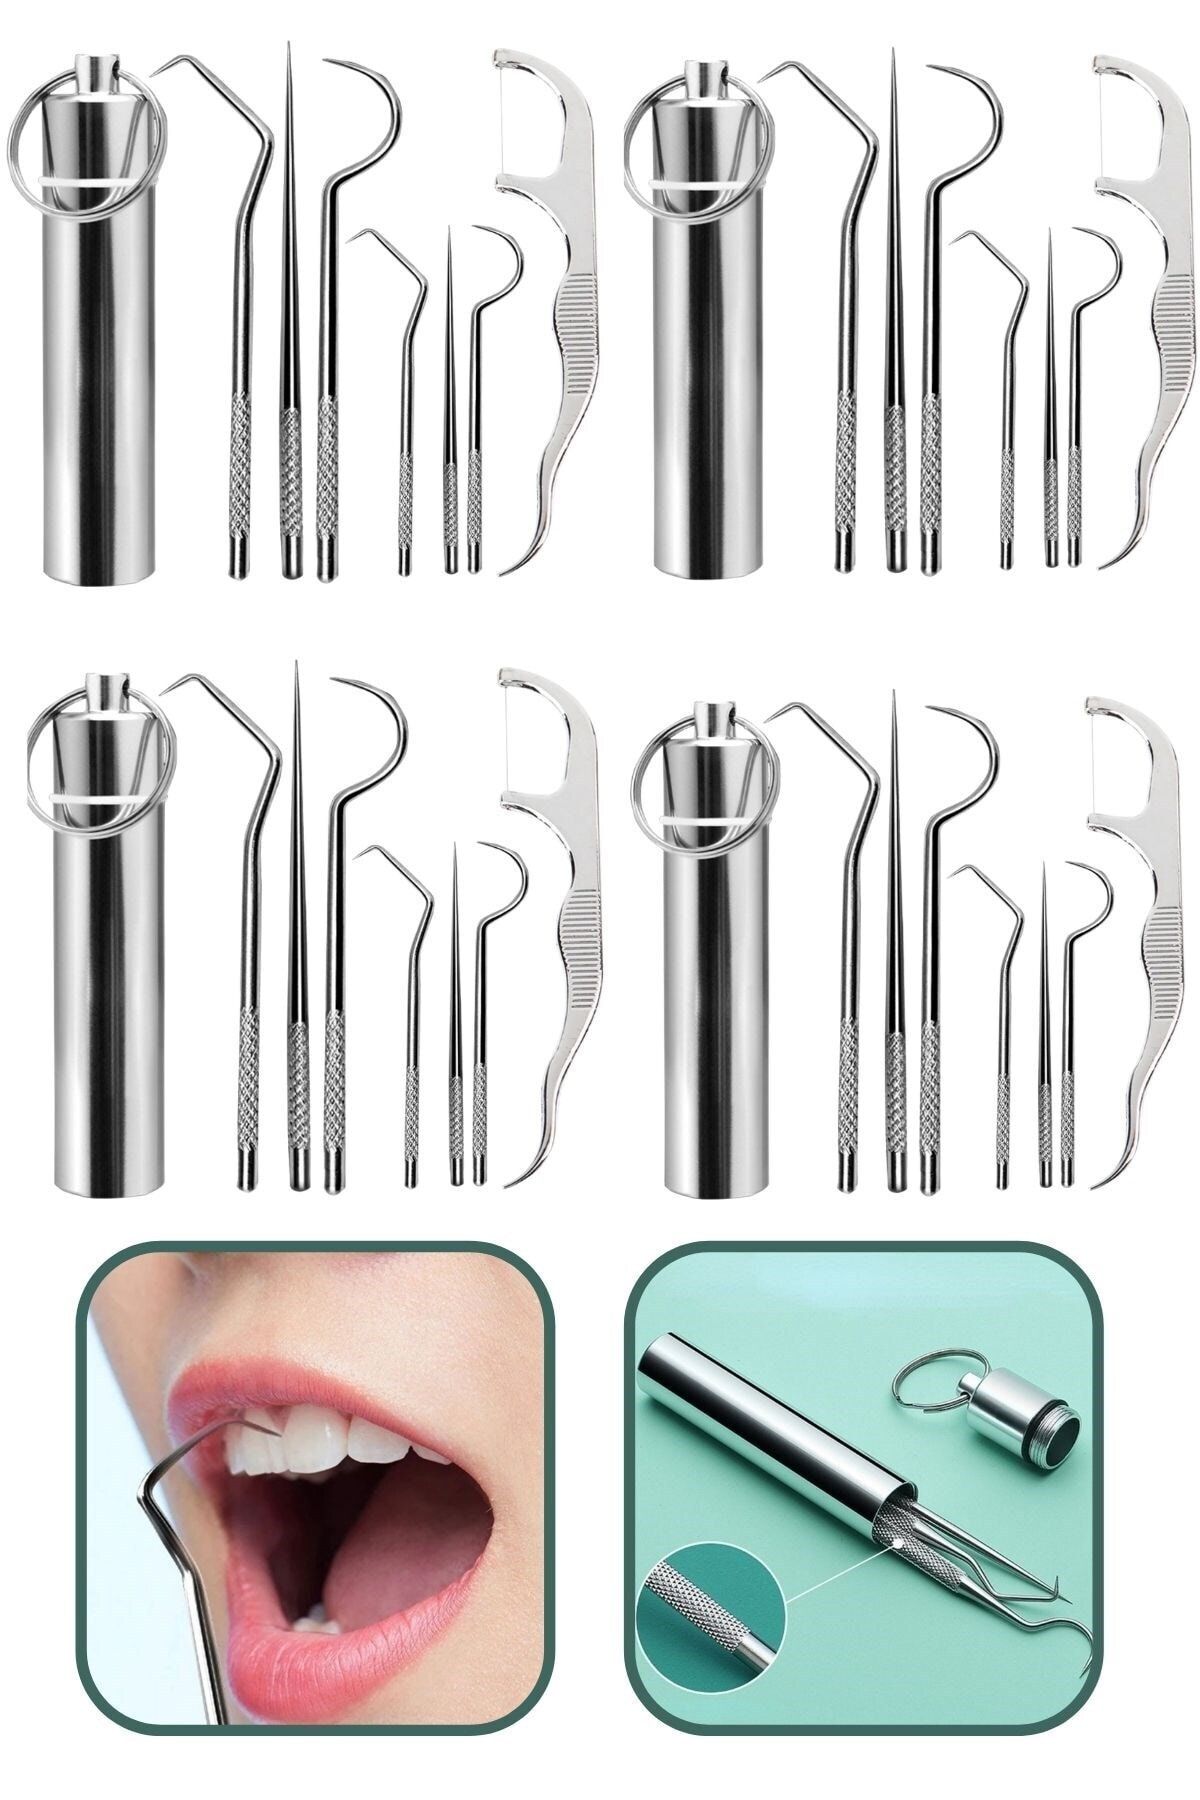 Buffer ® 4 Adet 7 Parça Paslanmaz Çelik Ağız Diş Tartar Sökücü Temizlik Bakım Seti